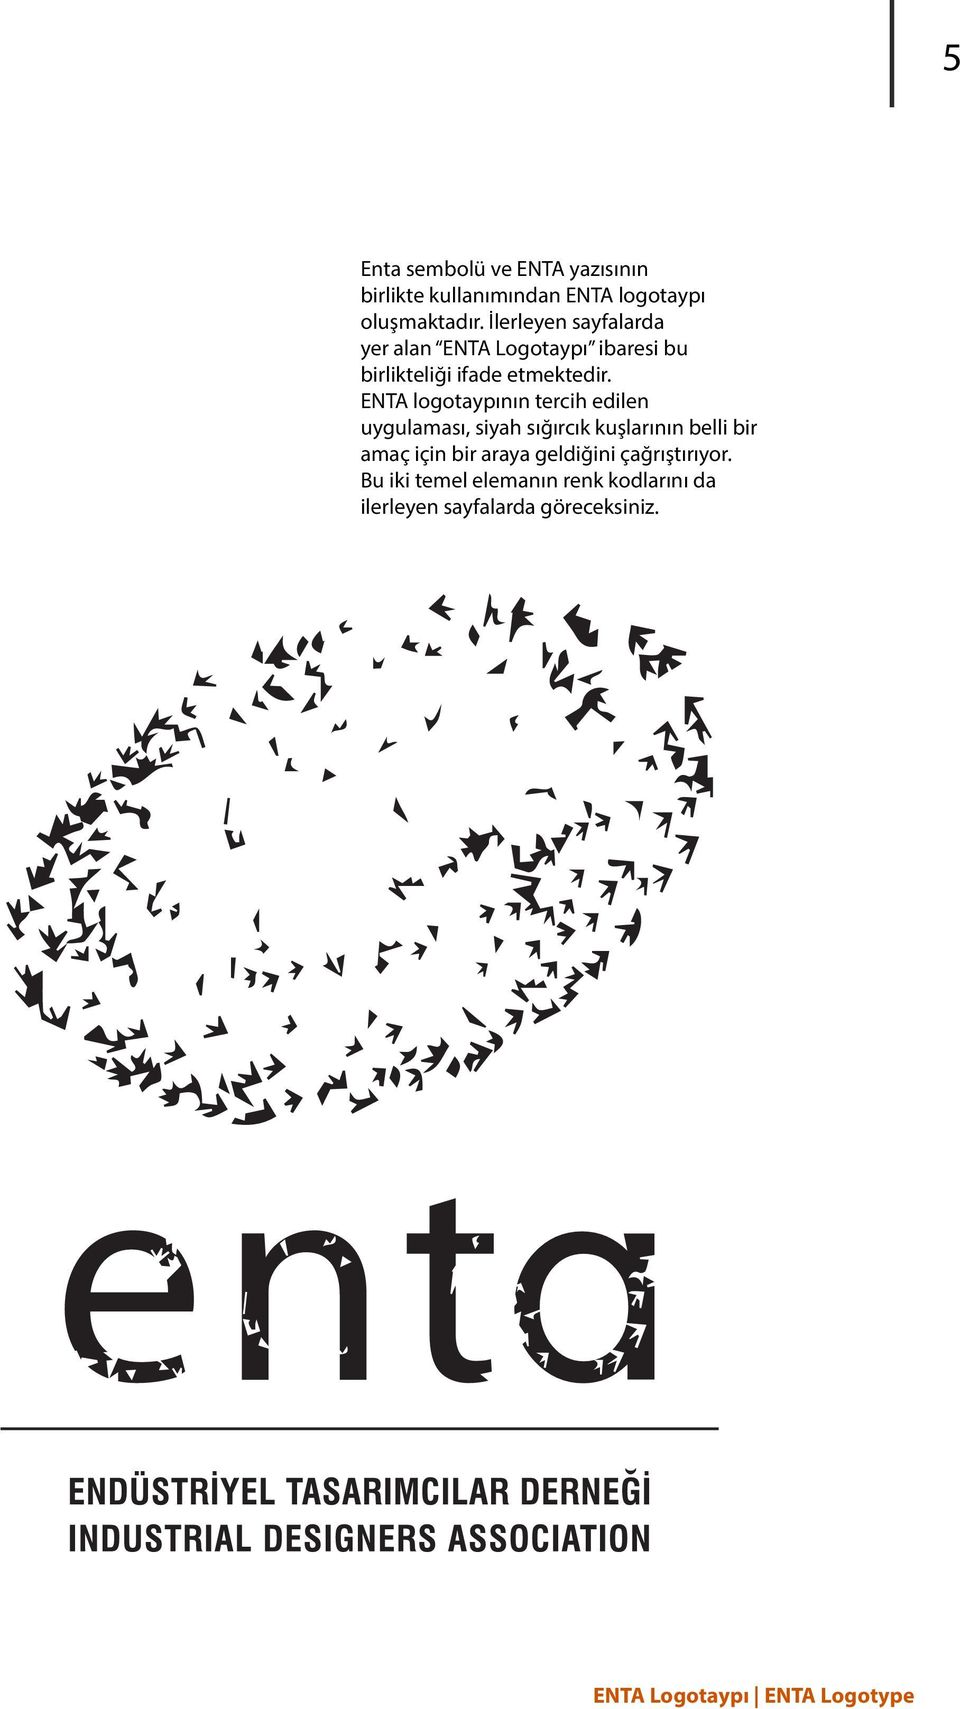 ENTA logotaypının tercih edilen uygulaması, siyah sığırcık kuşlarının belli bir amaç için bir araya